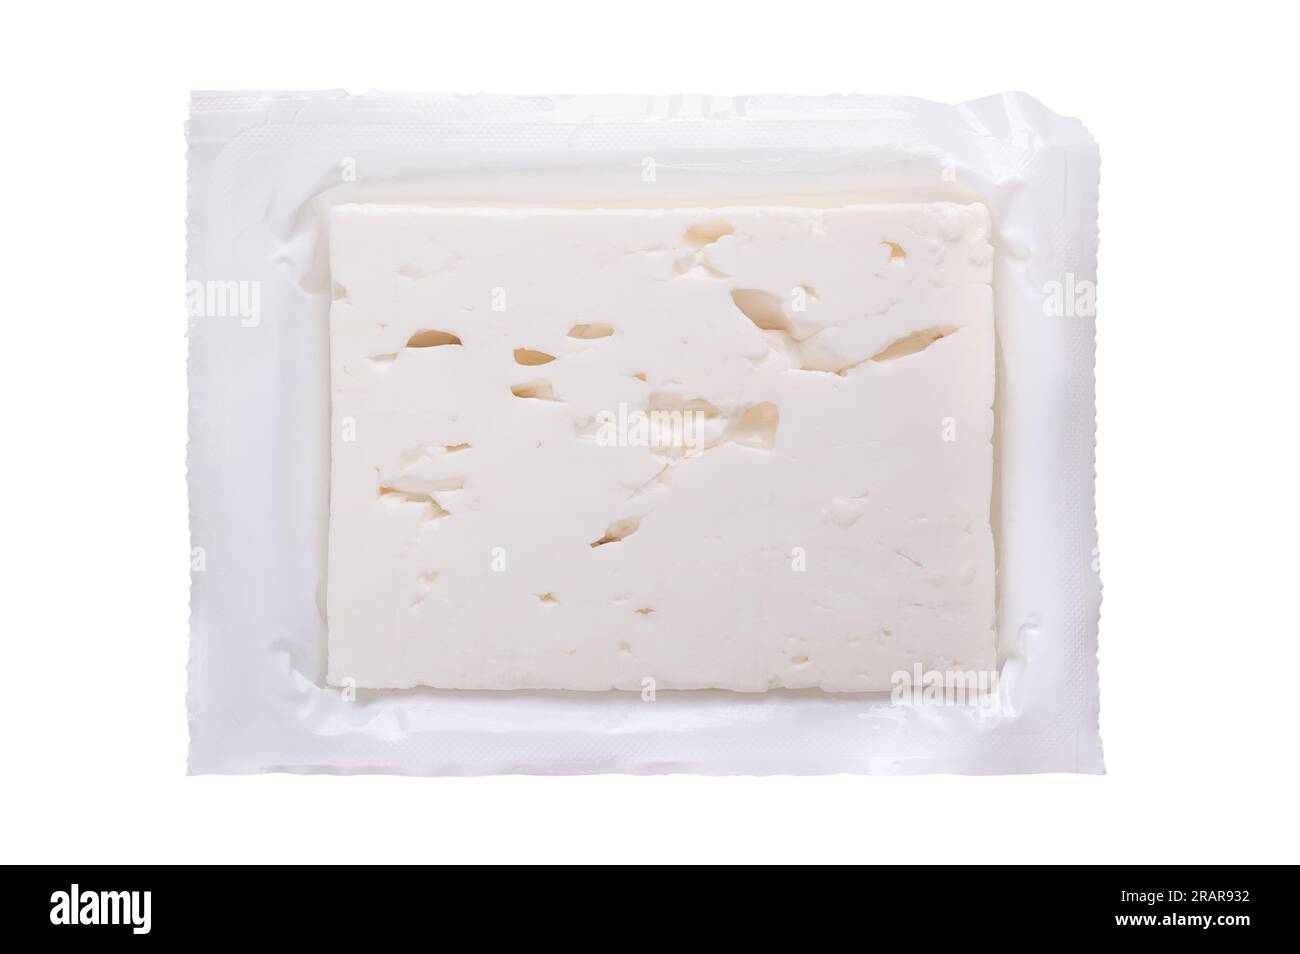 Bloc de feta grecque, fromage saumuré, dans son emballage plastique original ouvert. Fromage affiné en saumure, à texture molle et humide. Banque D'Images